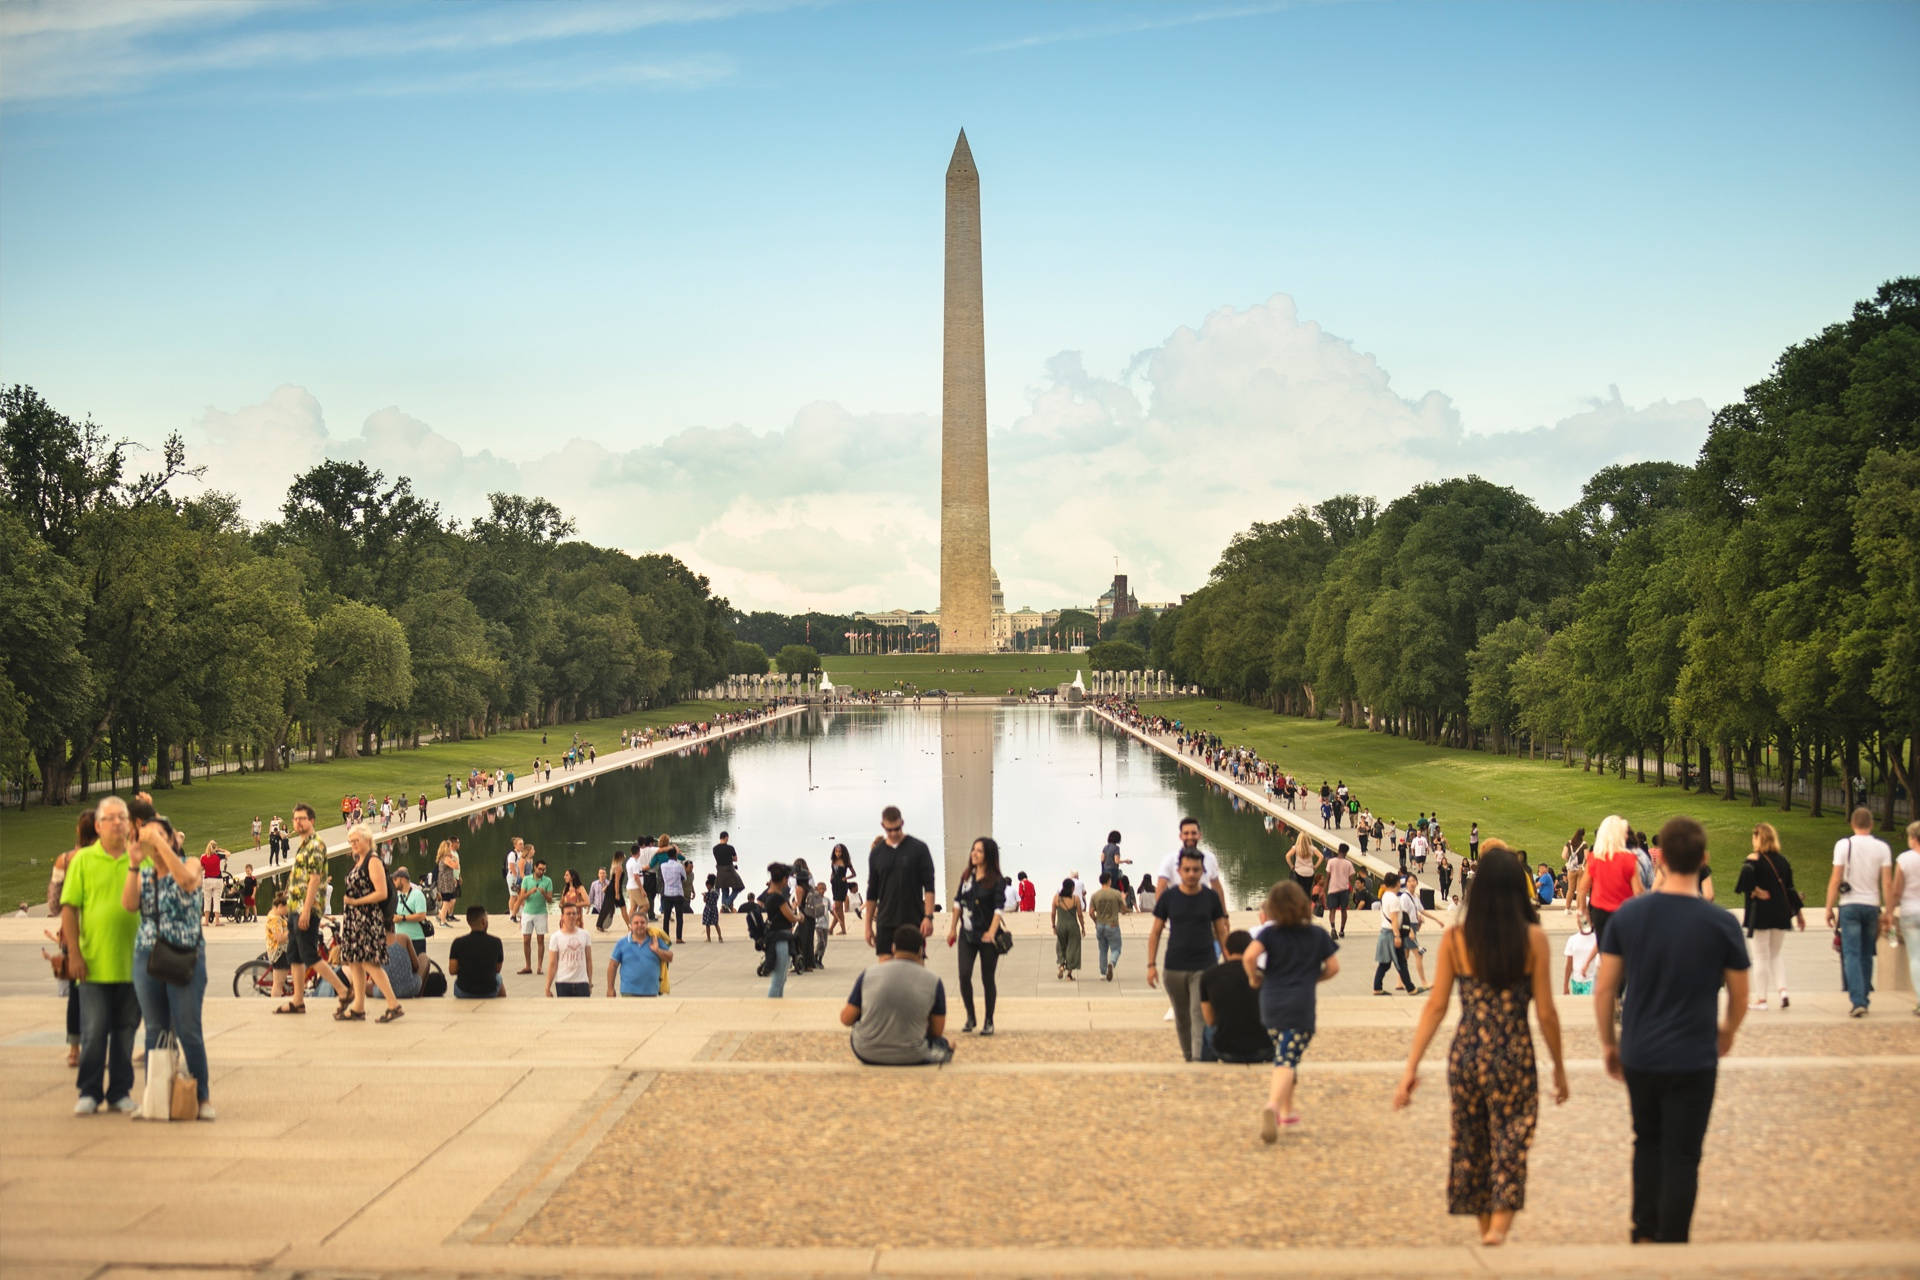 Touristiin Visita Al Monumento A Washington Sfondo